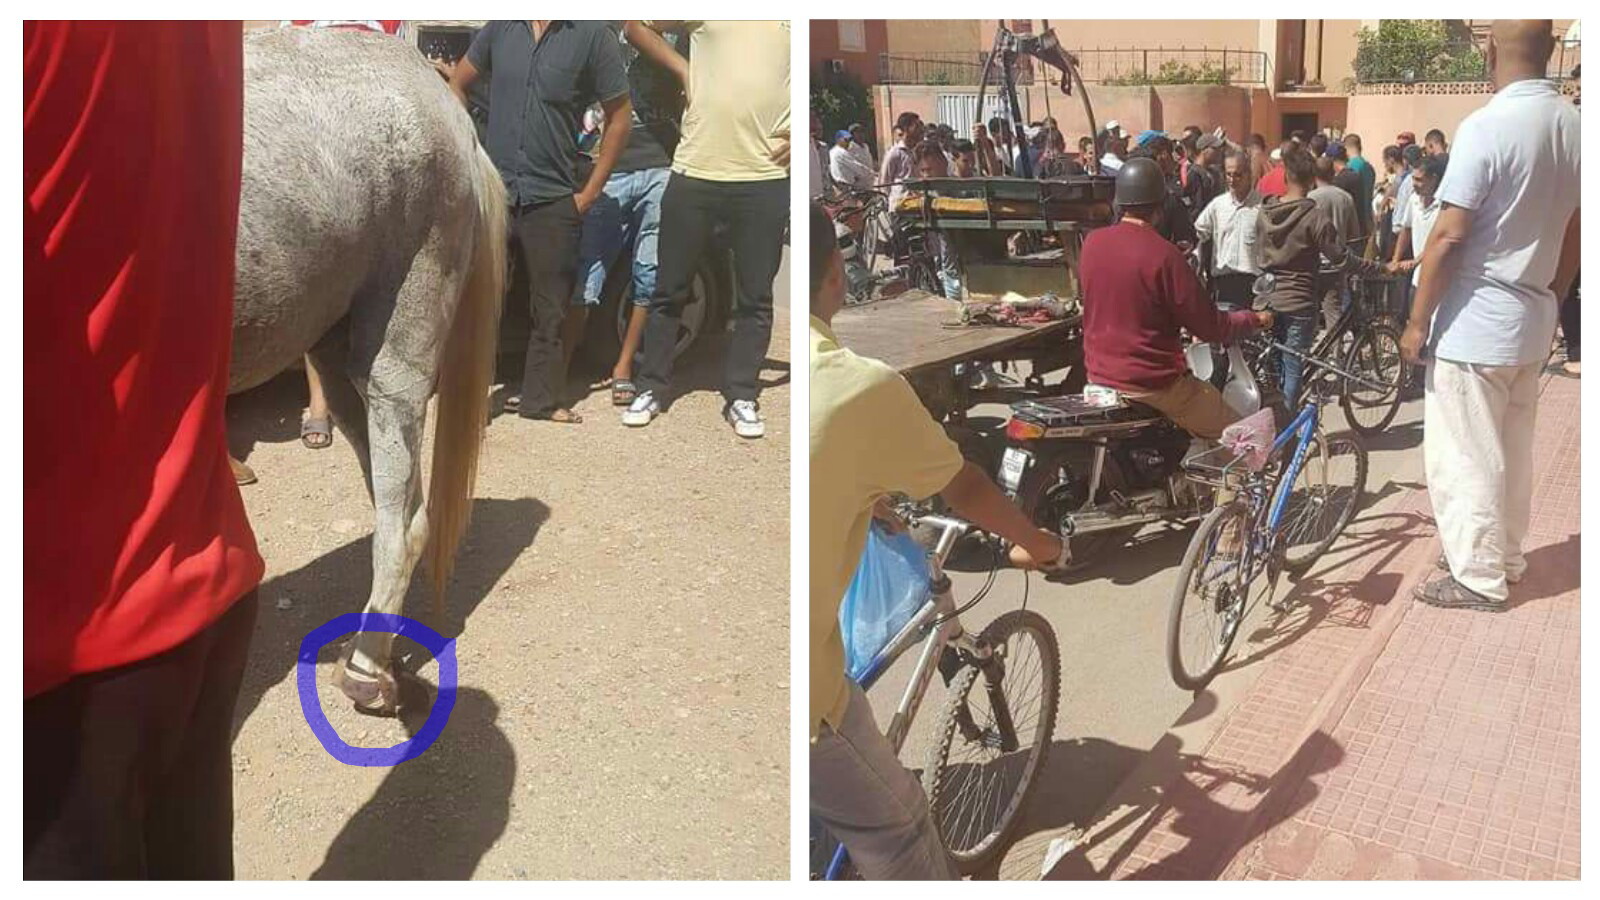 باقي لخير… قصة شاب أنقد حصان ساقه مكسورة تشعل مواقع التواصل الاجتماعي بالفقيه بن صالح -الصور-